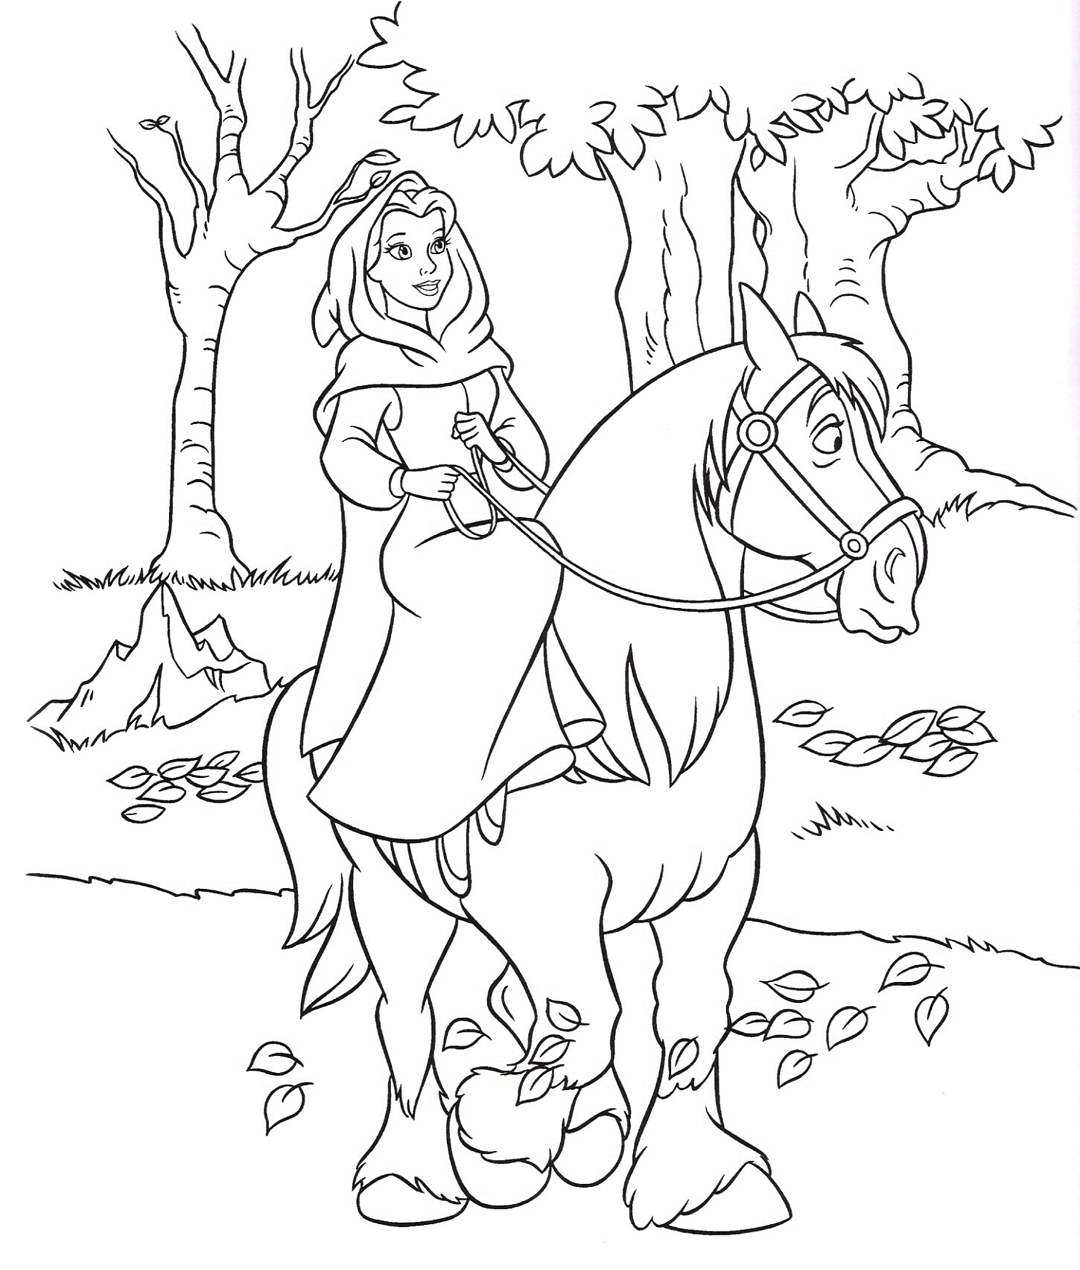 Раскраска принцесса с конем